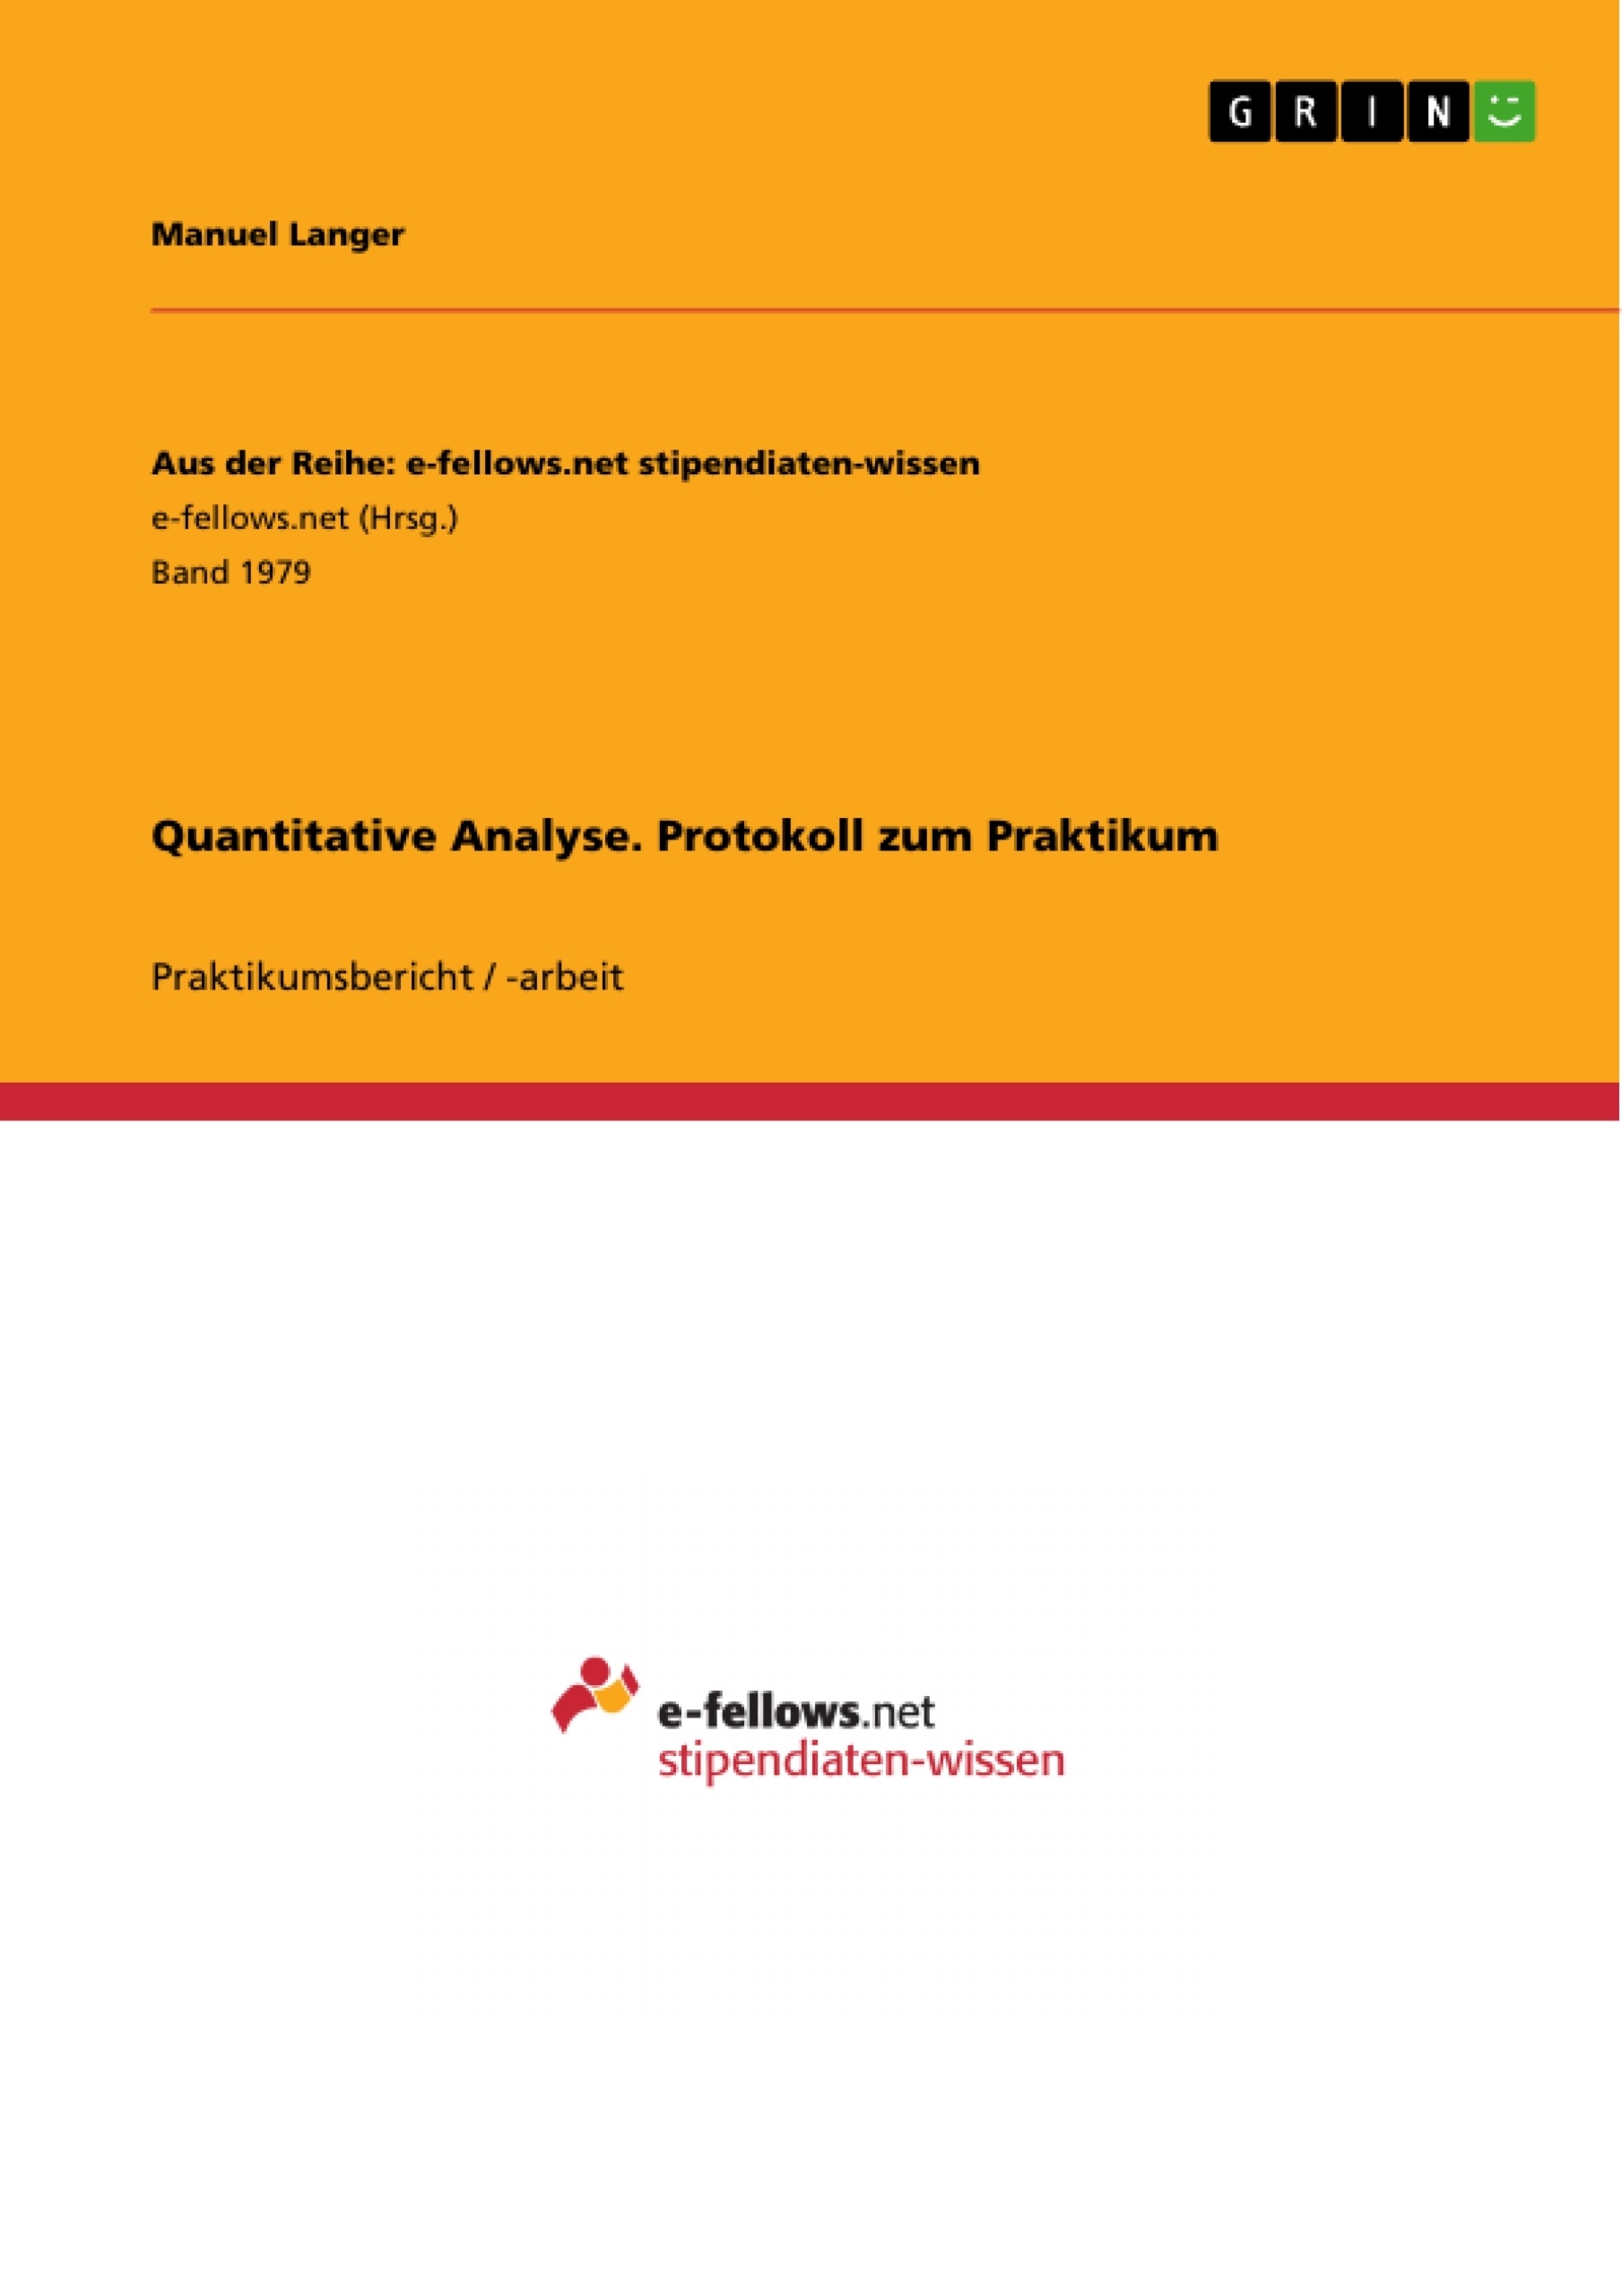 Title: Quantitative Analyse. Protokoll zum Praktikum